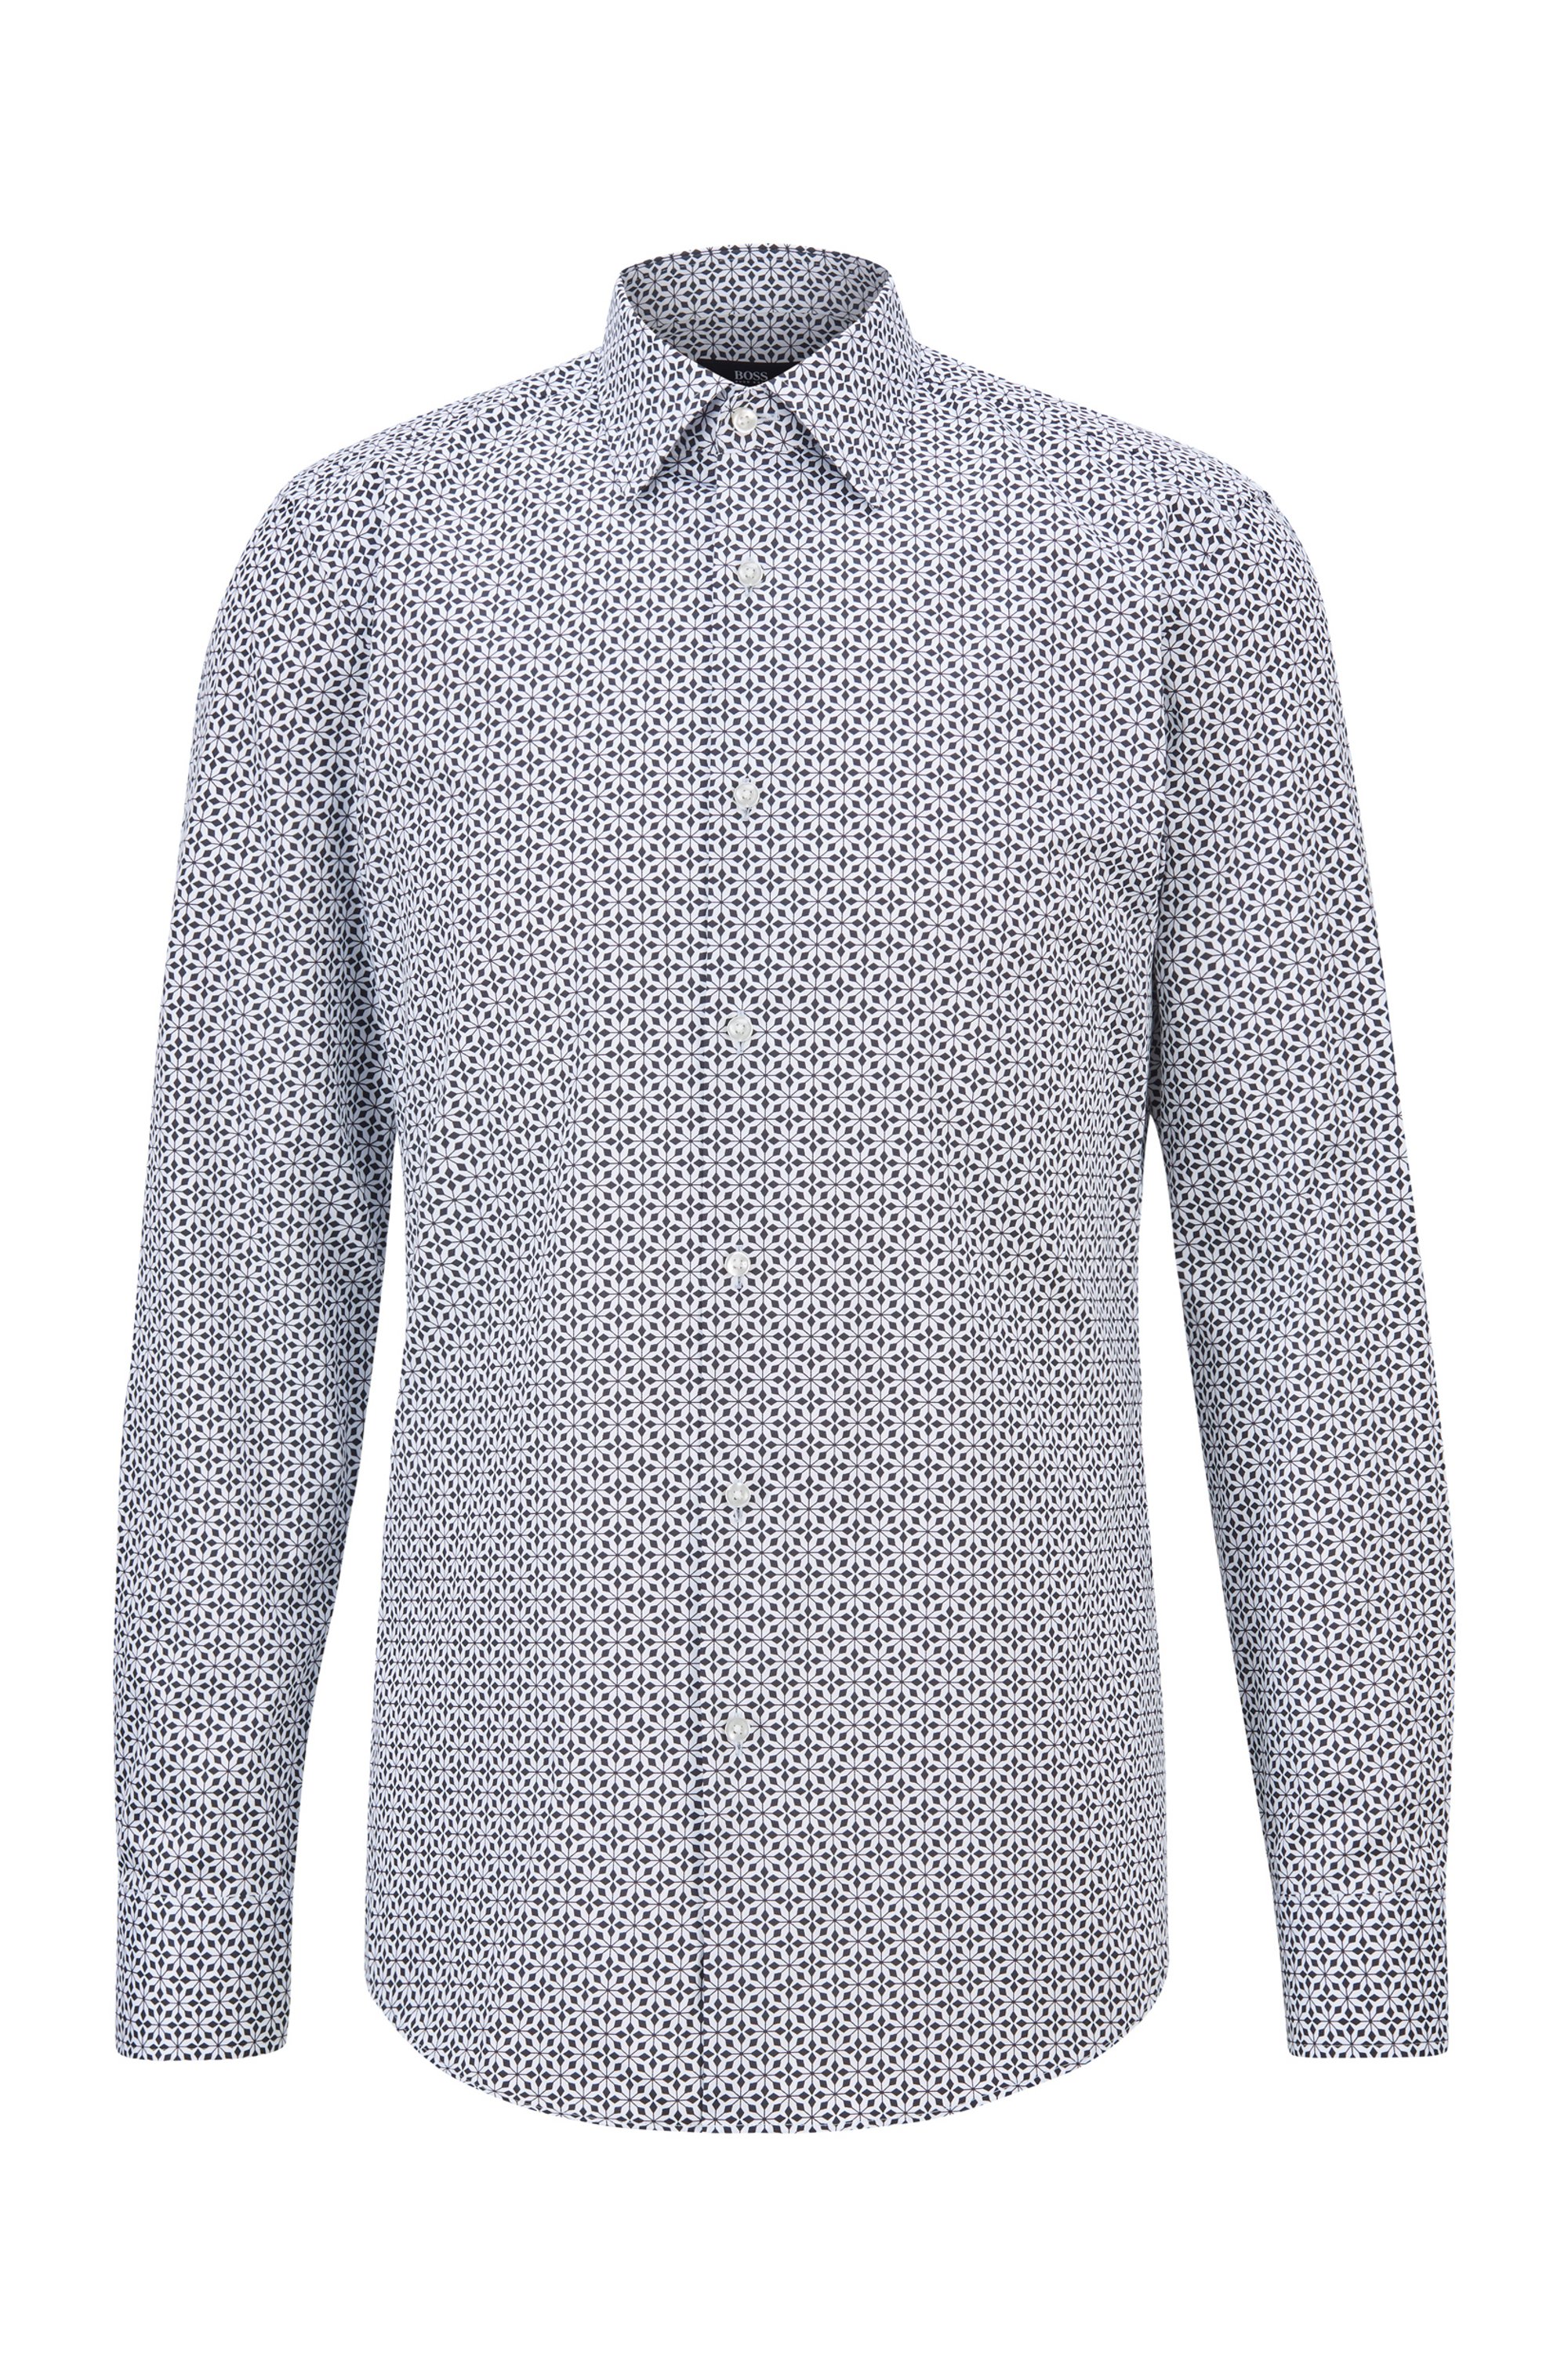 Camicia slim fit in raso di cotone italiano con stampa geometrica, Bianco